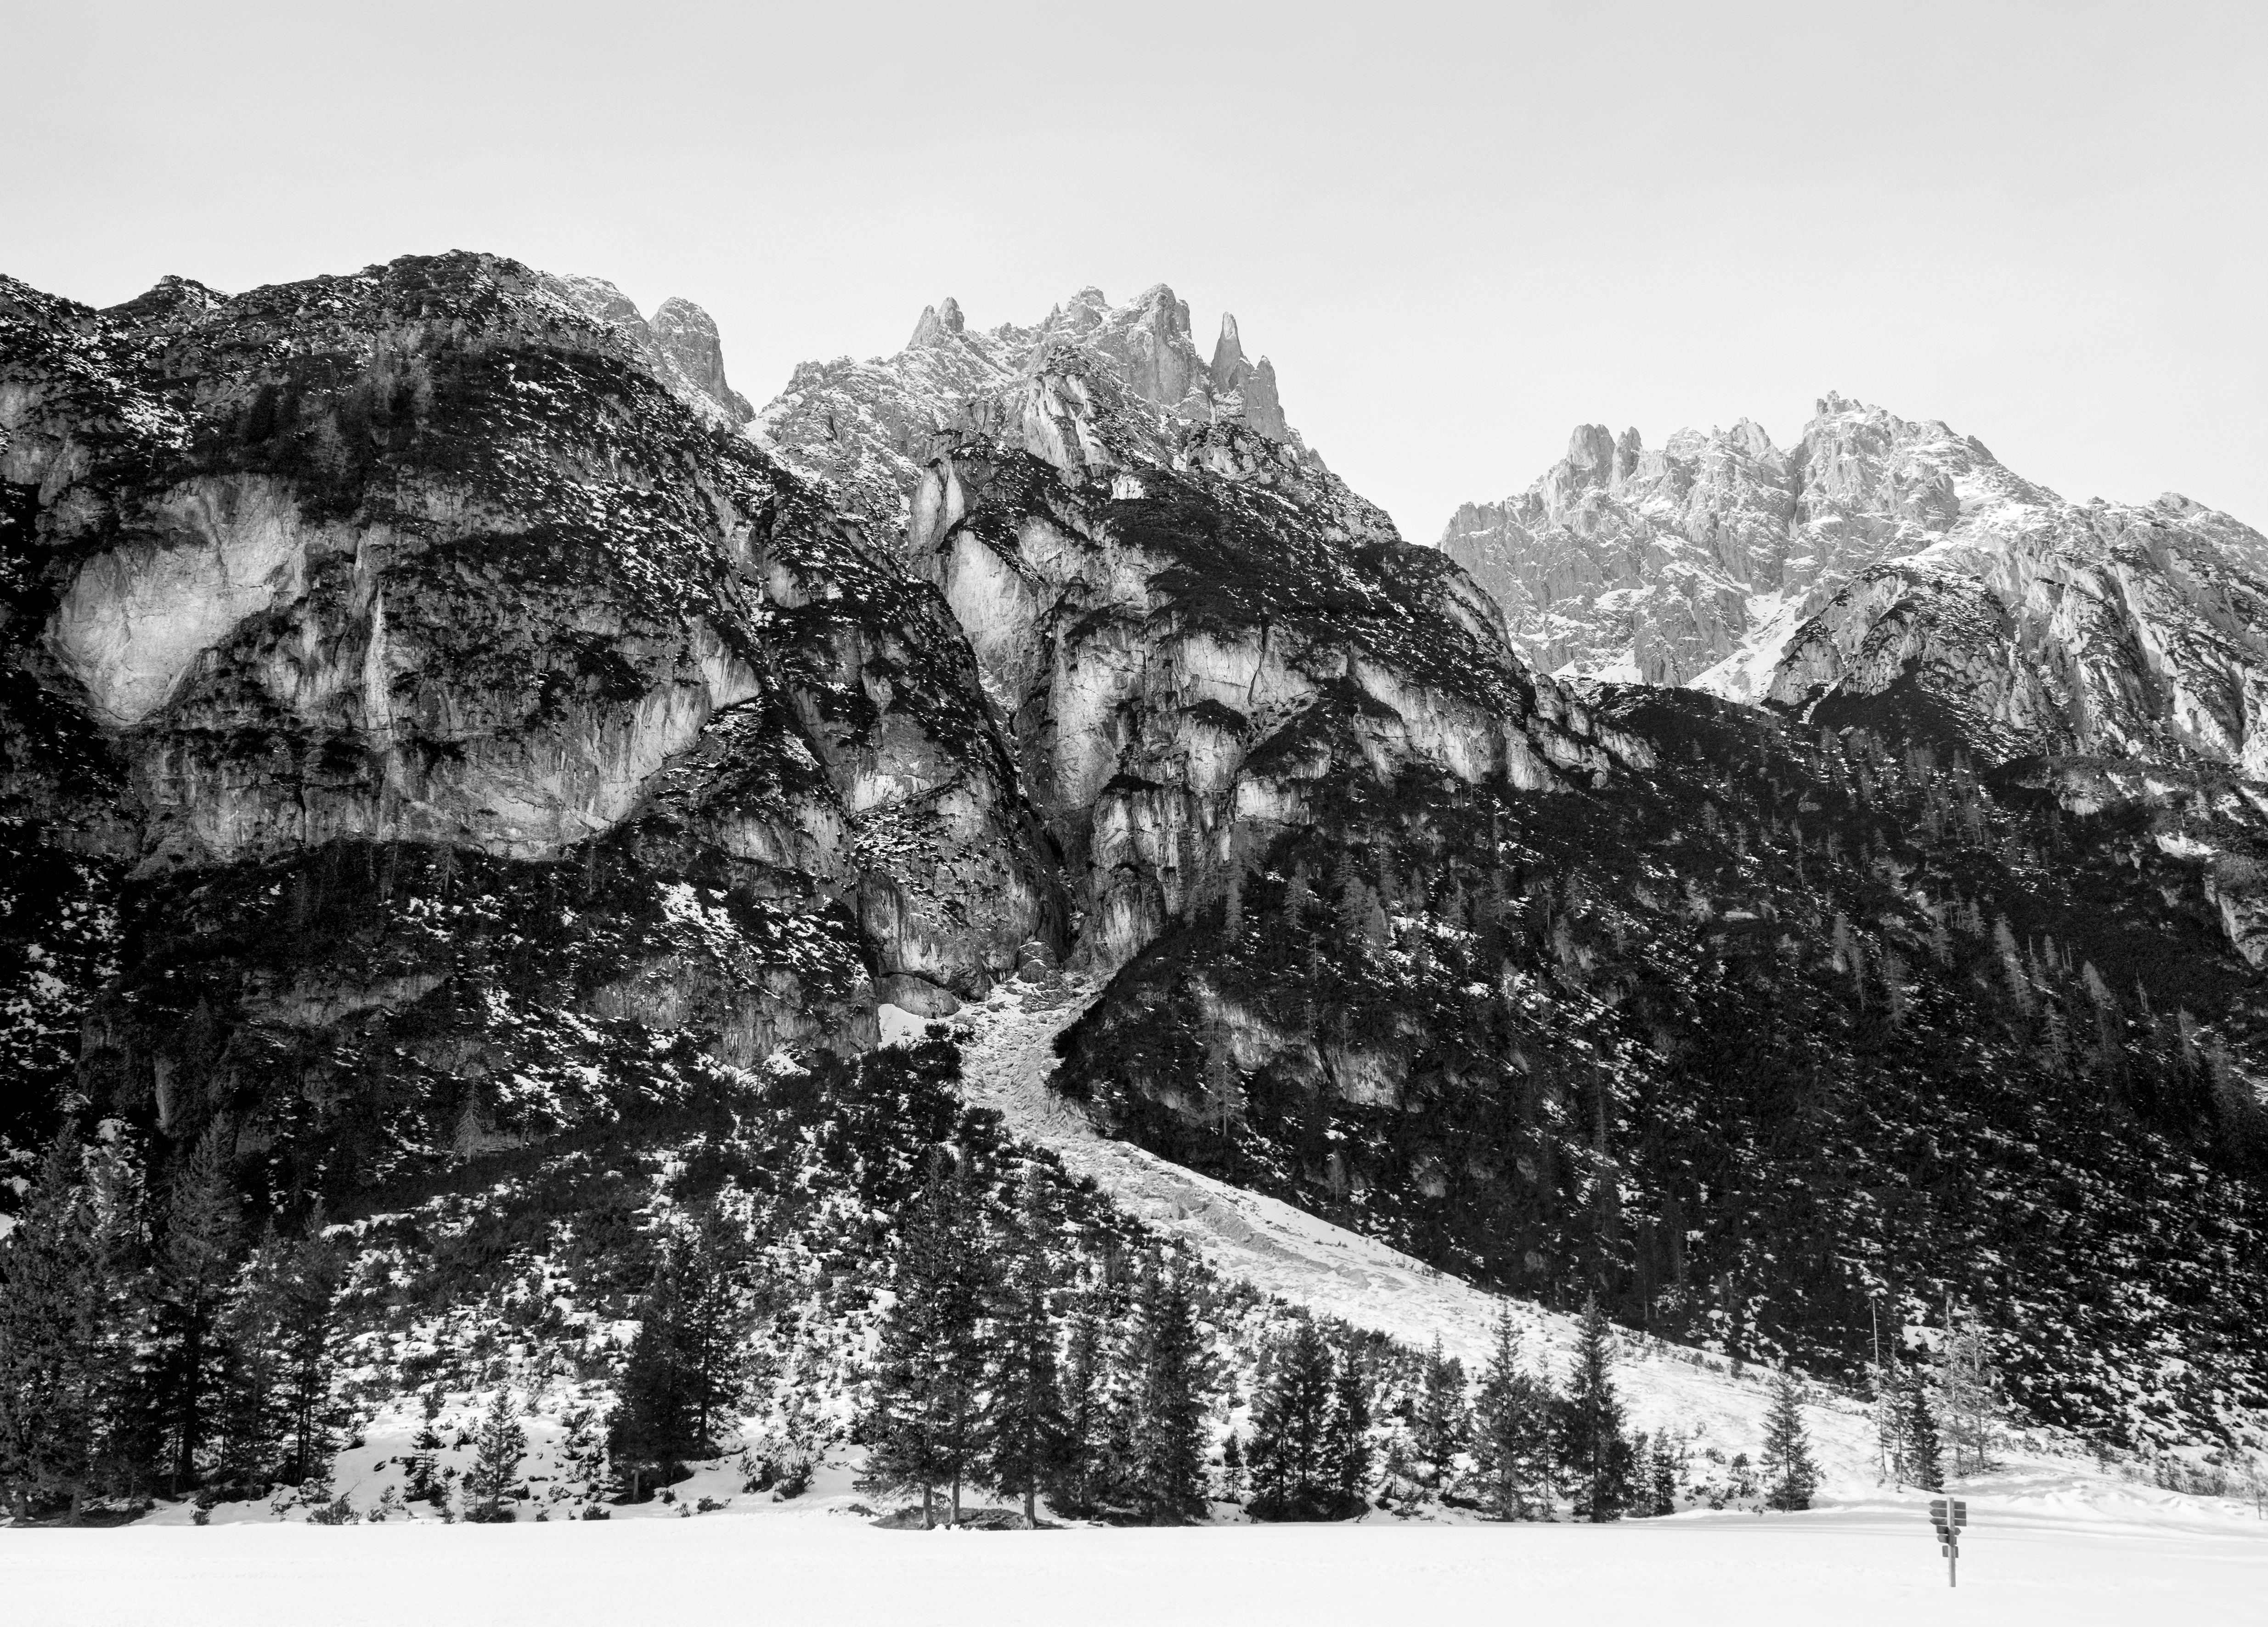 Ugne Pouwell Black and White Photograph – Dolomites No.3, Analogue Schwarz-Weiß-Gebirgefotografie, Ltd. 10